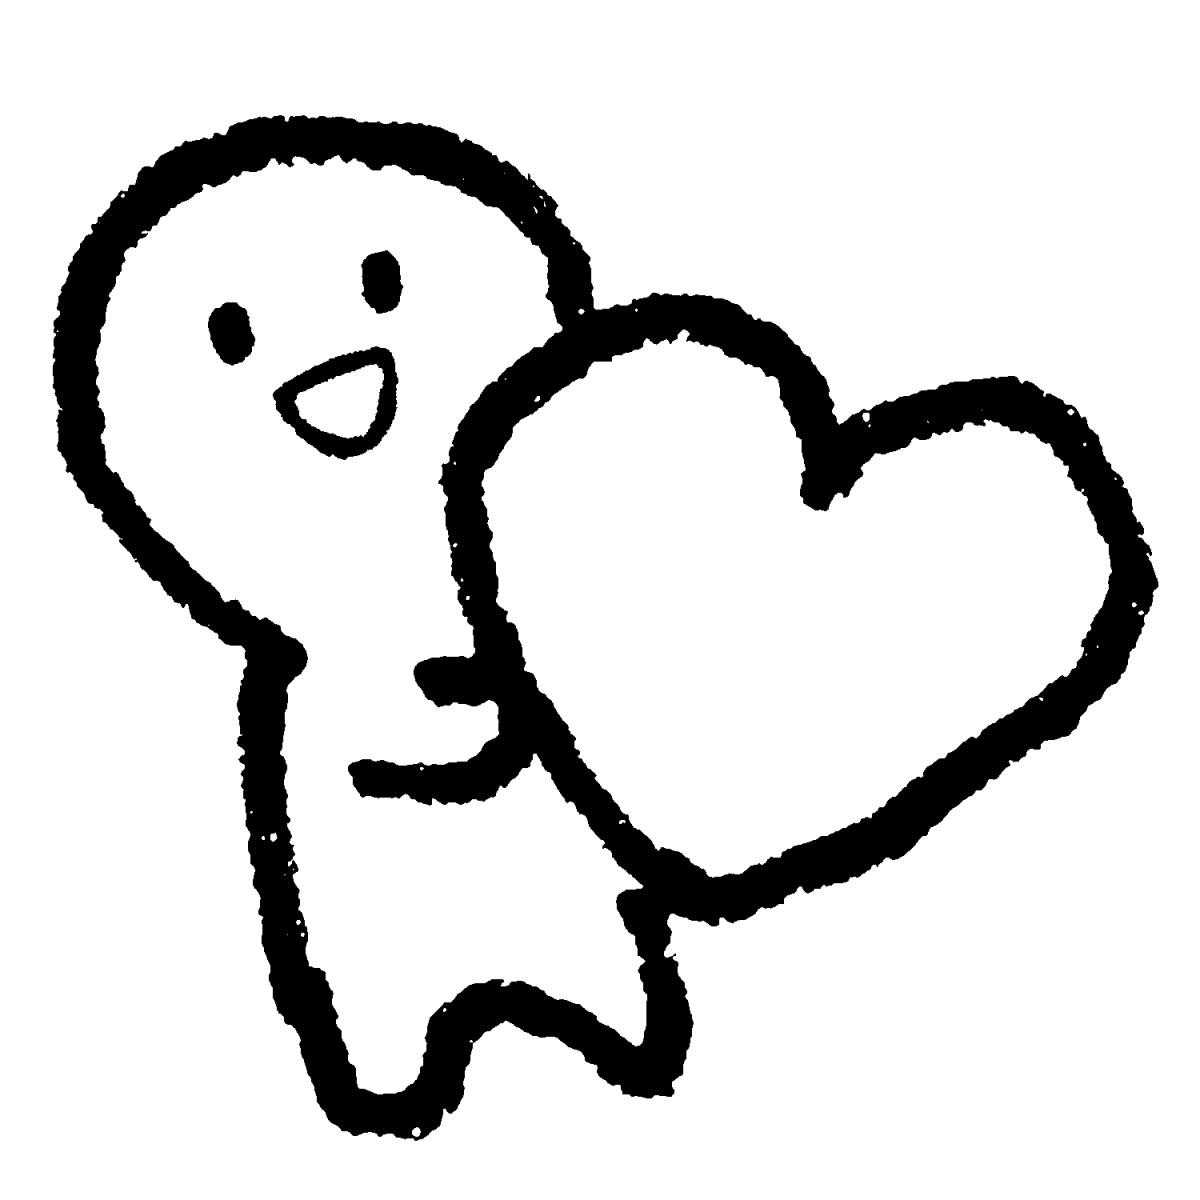 ハートを持つのイラスト / Have a heart Illustration